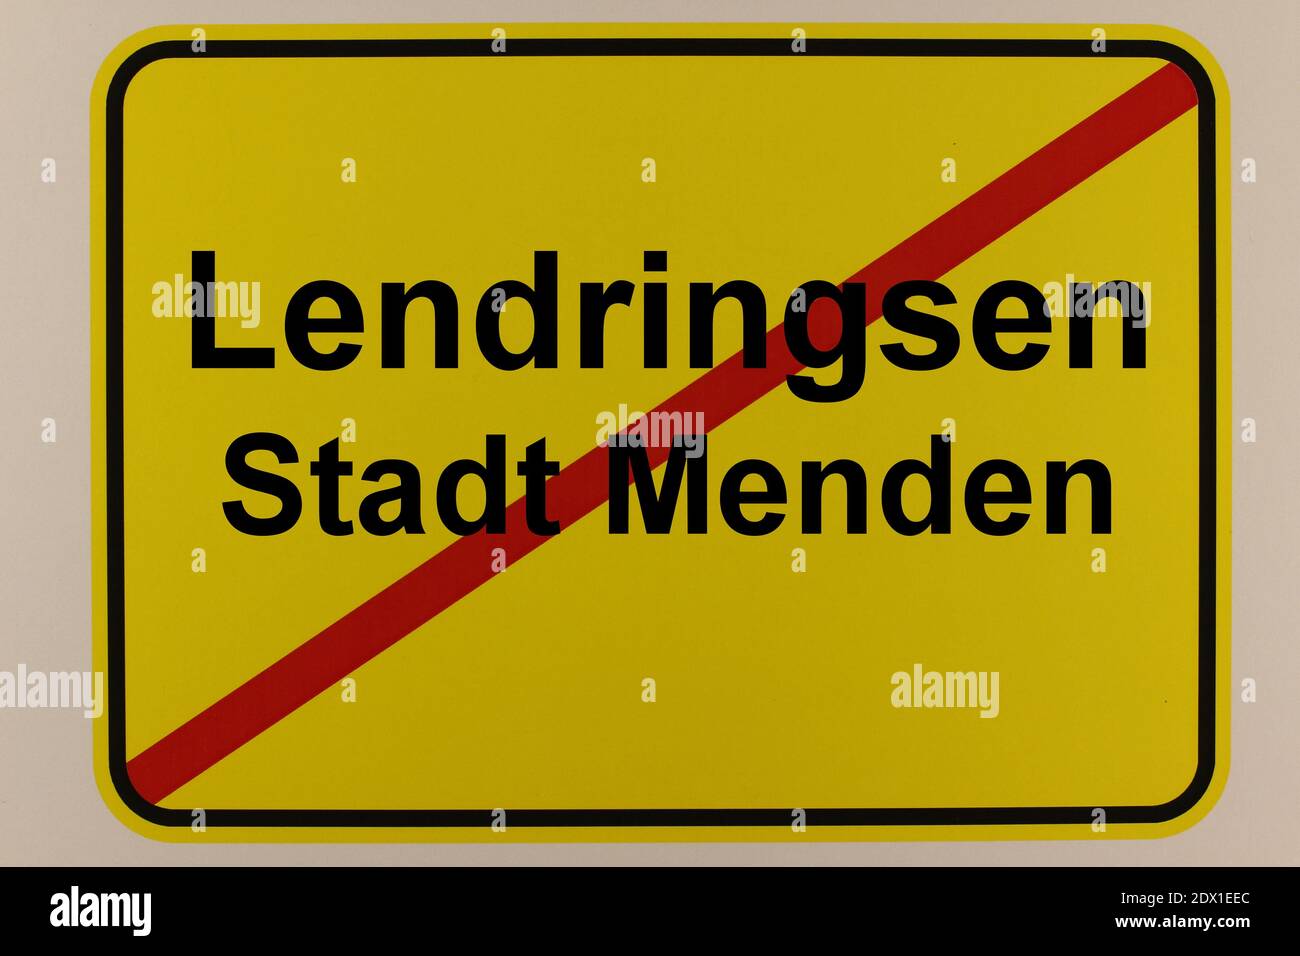 Illustration eines Stadteingangsschildes von Lendringsen, einem Stadtteil von Menden im Sauerland Stock Photo